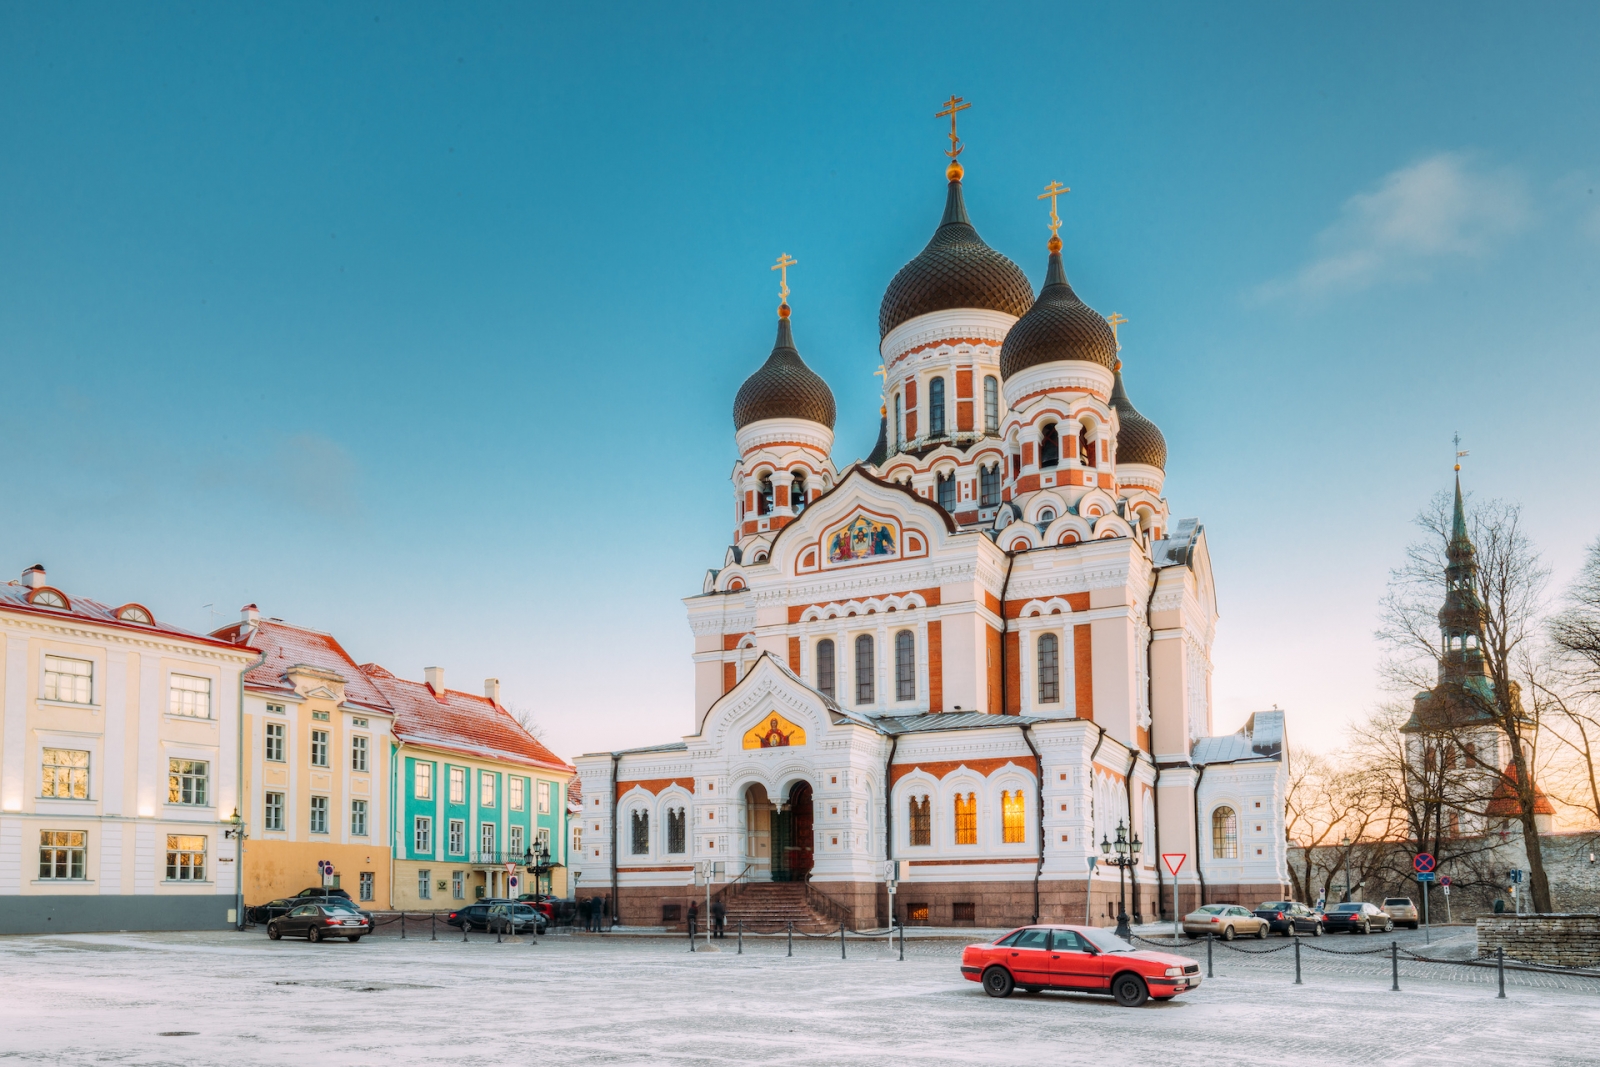 Tallinn, Estonia.  Vista Di Mattina Della Cattedrale Di Alexander Nevsky.  La famosa cattedrale ortodossa è la più grande e maestosa cattedrale ortodossa a cupola di Tallinn.